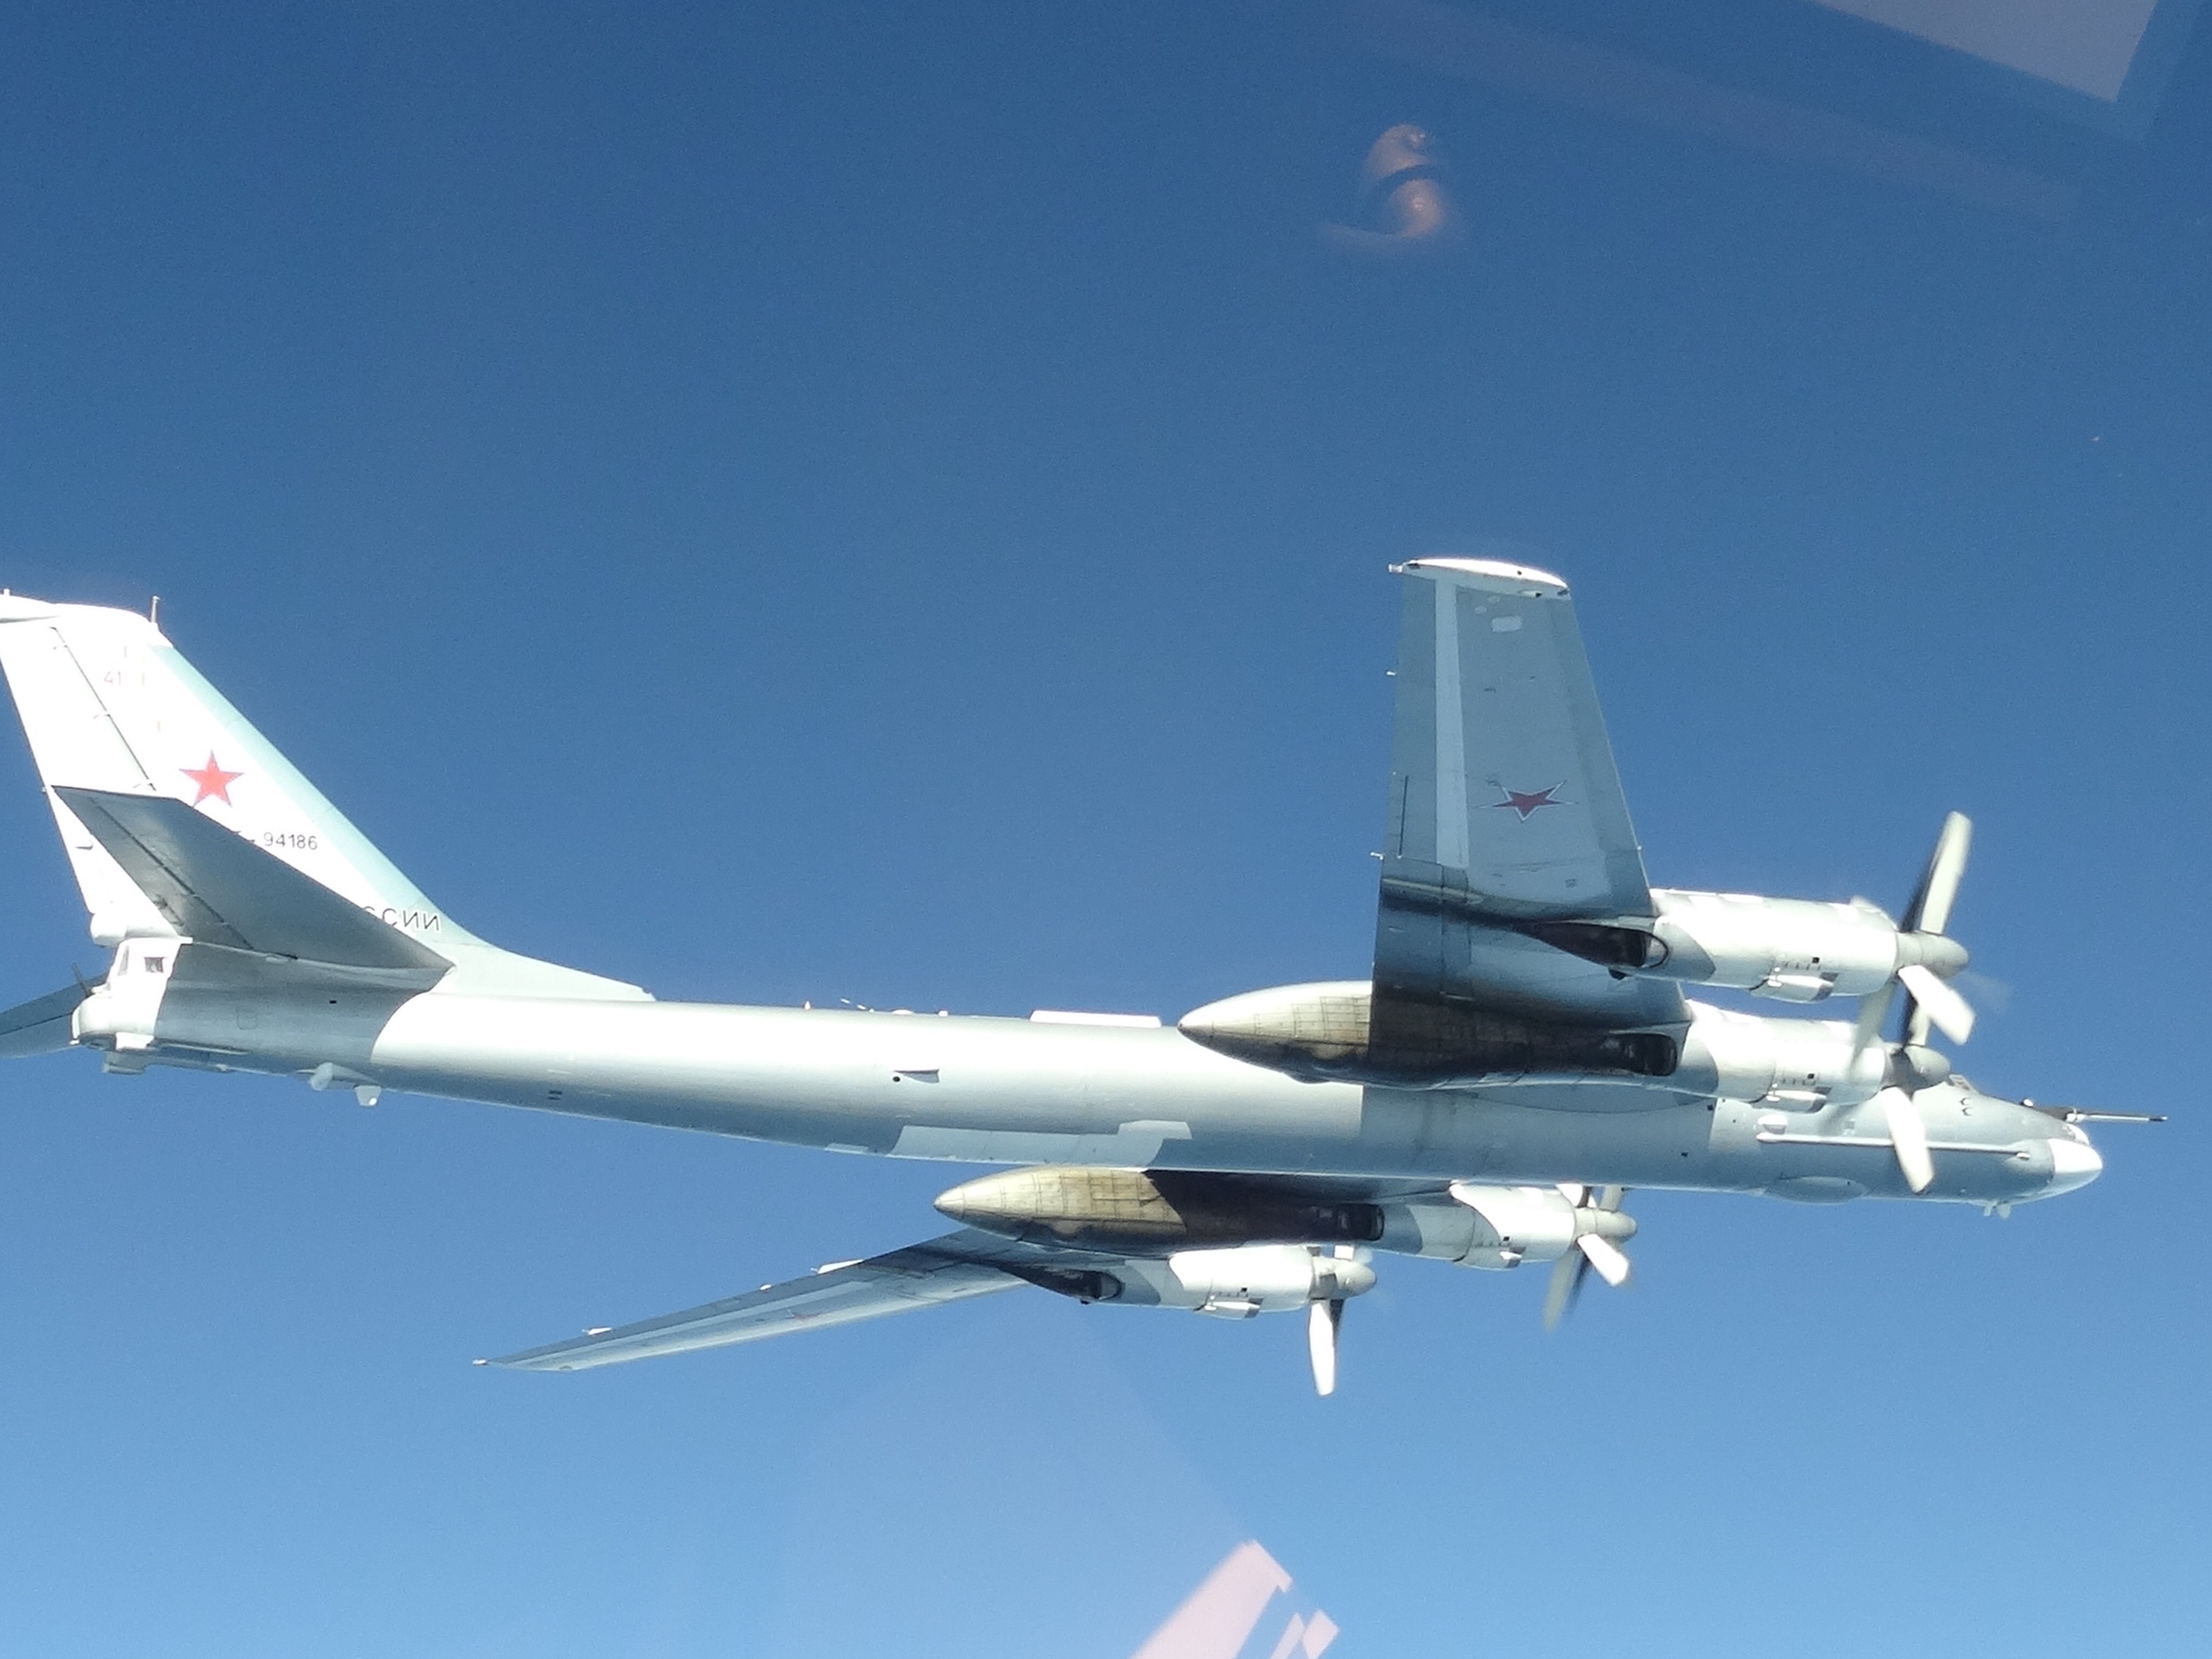 Aviões militares dos EUA interceptam aeronaves russas perto do